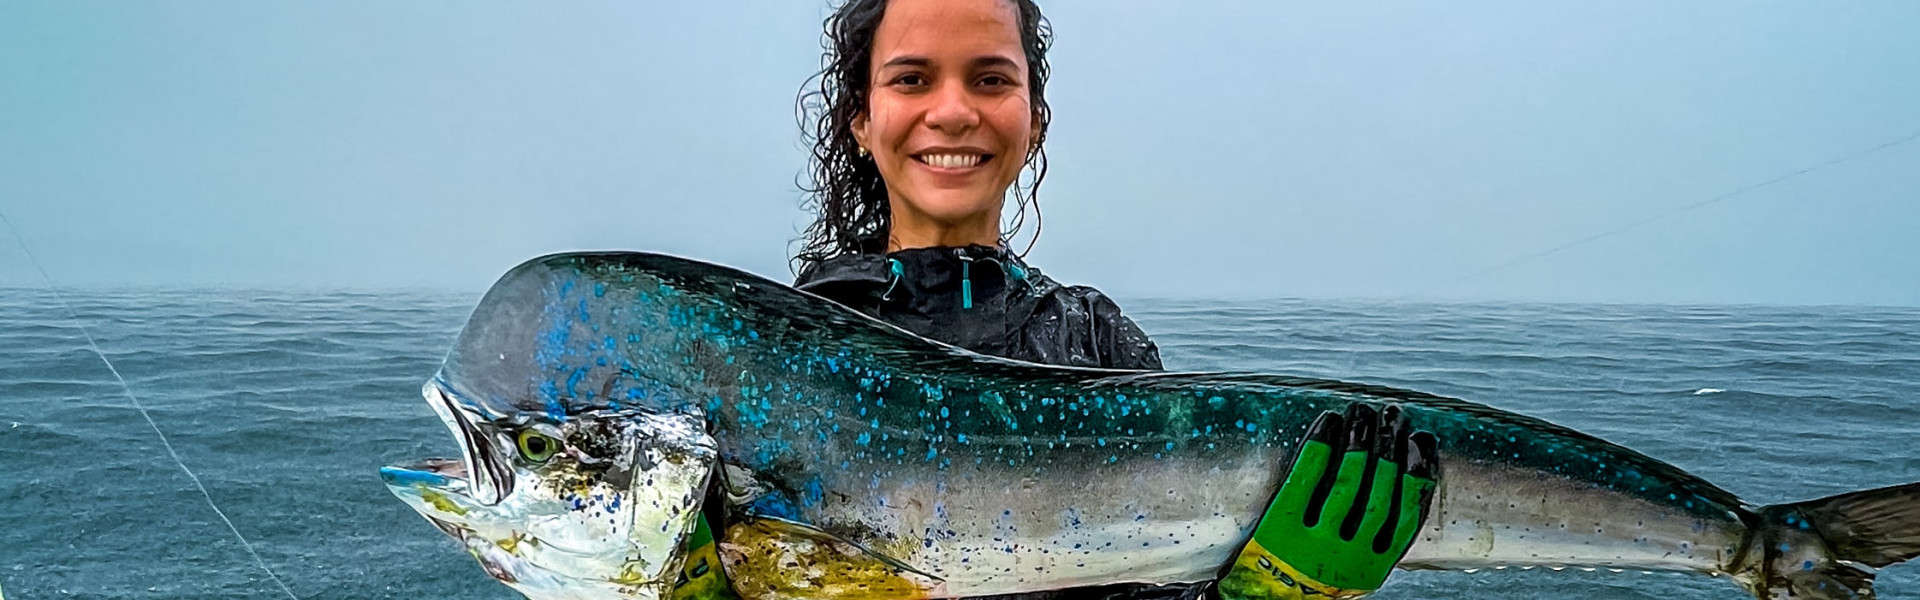 Com dois oceanos para explorar, Panamá é destino certo para quem pratica pesca esportiva